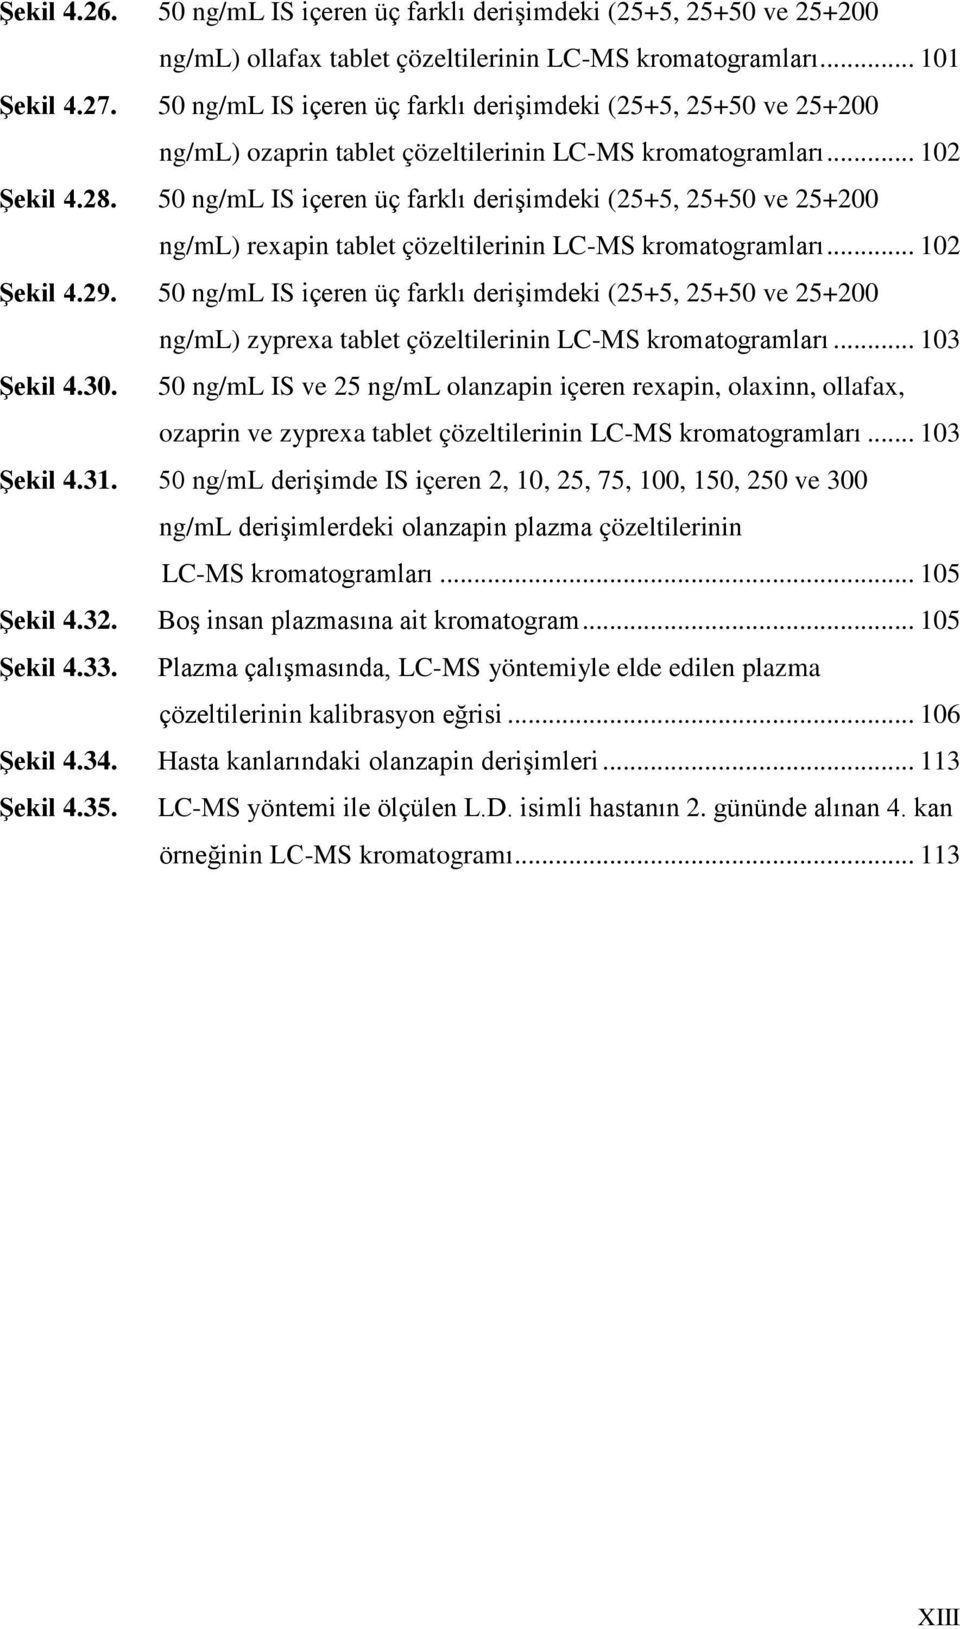 50 ng/ml IS içeren üç farklı derişimdeki (25+5, 25+50 ve 25+200 ng/ml) rexapin tablet çözeltilerinin LC-MS kromatogramları... 102 Şekil 4.29.